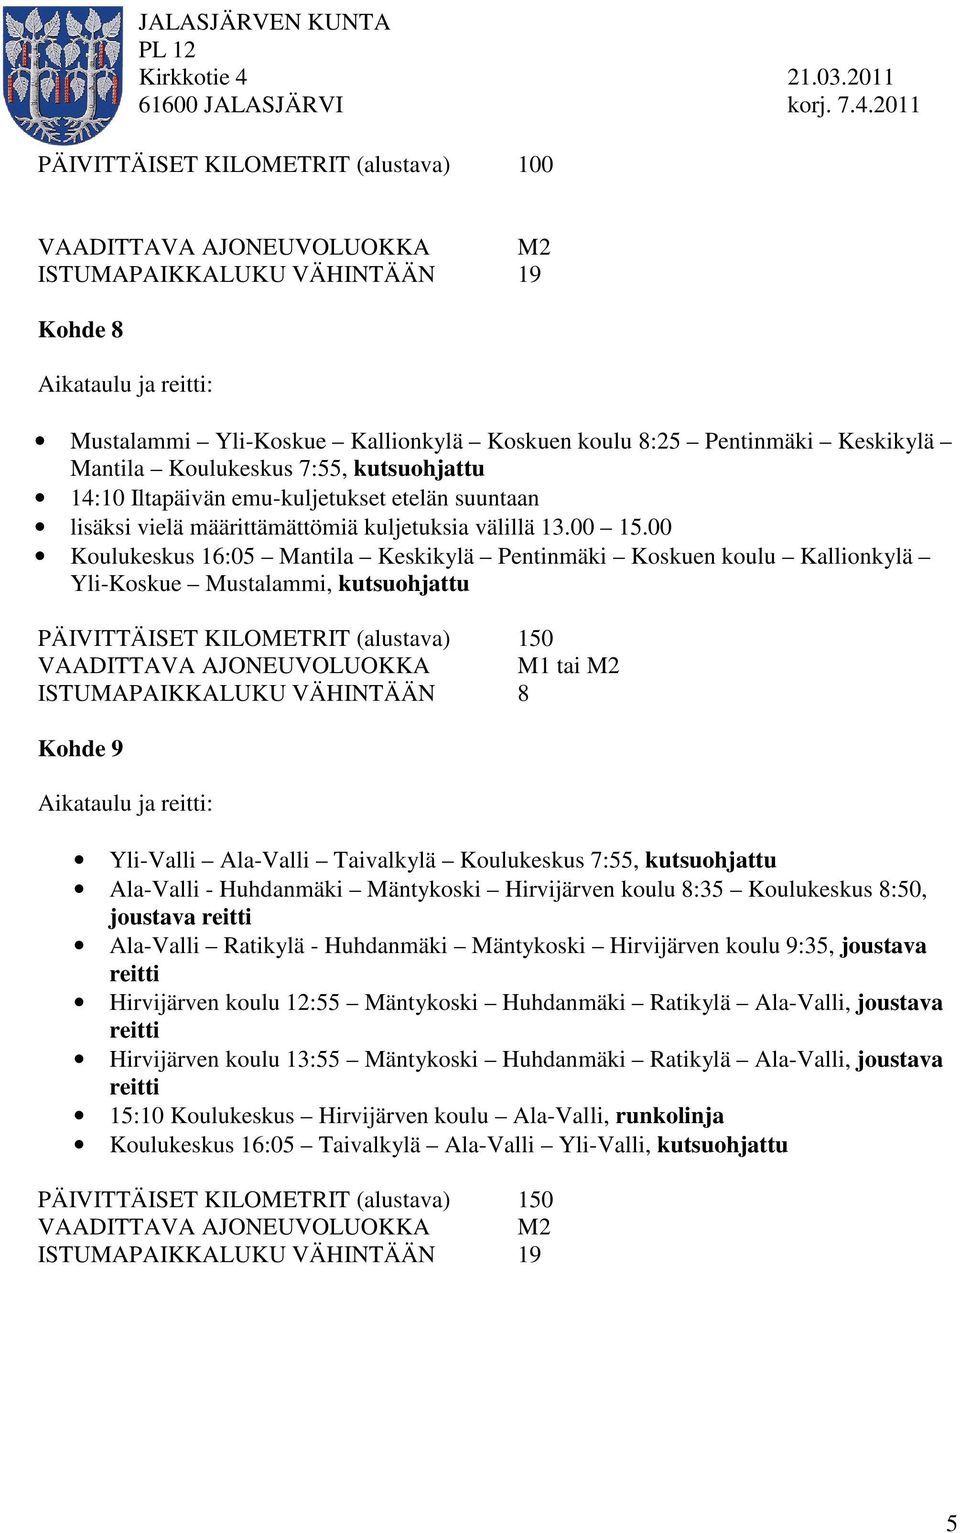 Keskikylä Mantila Koulukeskus 7:55, kutsuohjattu 14:10 Iltapäivän emu-kuljetukset etelän suuntaan lisäksi vielä määrittämättömiä kuljetuksia välillä 13.00 15.